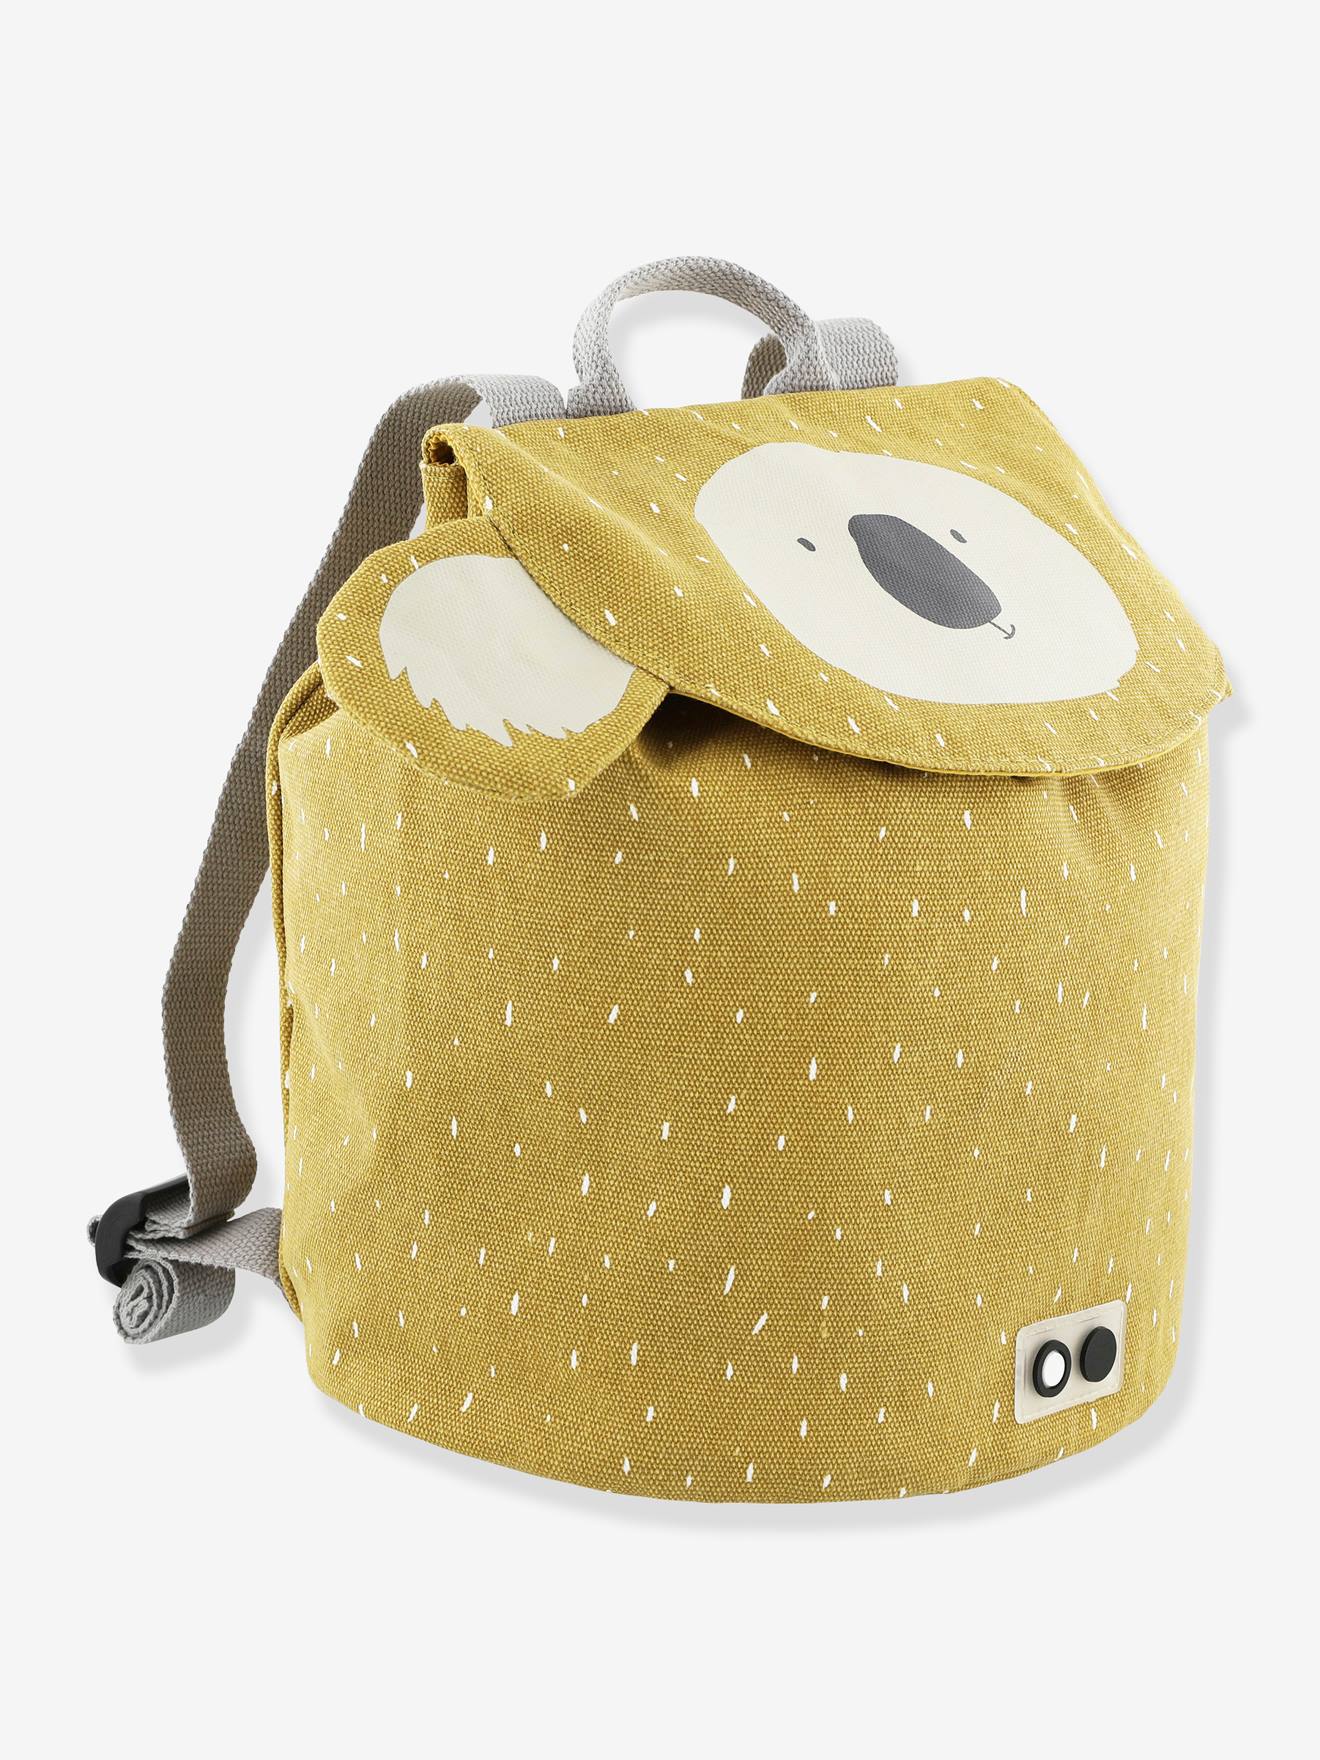 TRIXIE Mochila Backpack MINI animal, da TRIXIE amarelo escuro liso com motivo